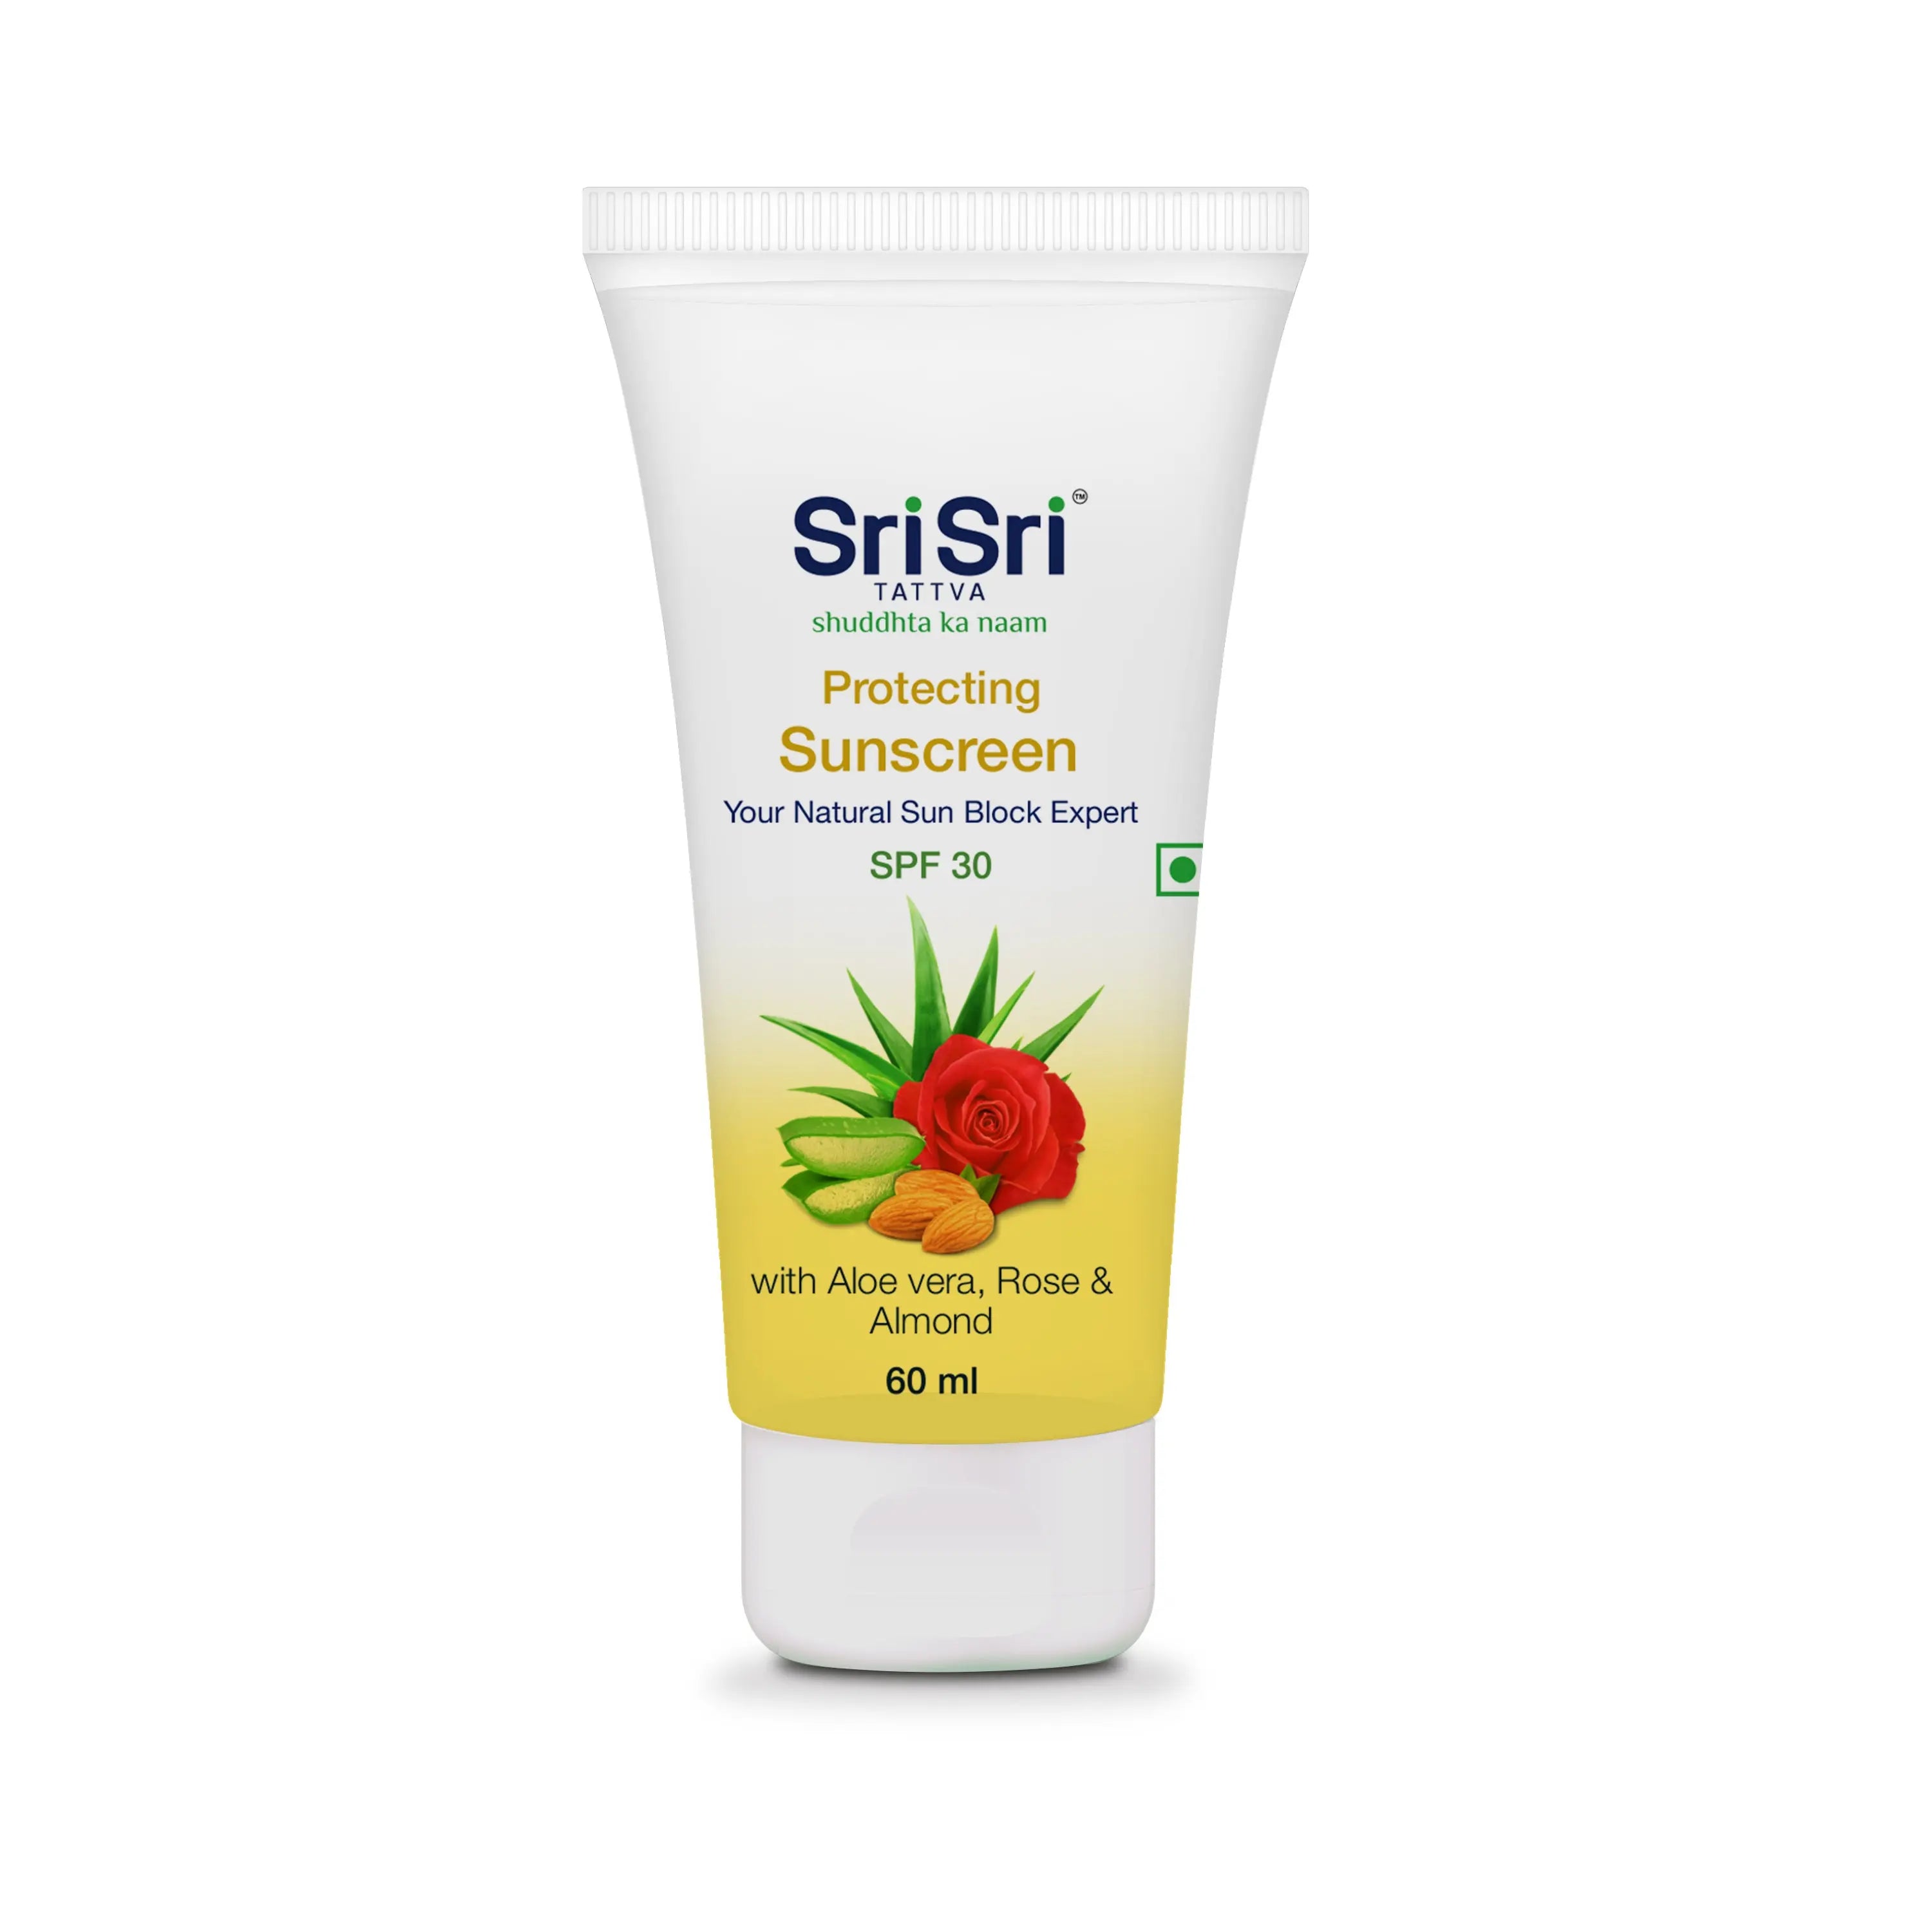 Protecting Sunscreen Cream Natural Sun Block Expert 60ml